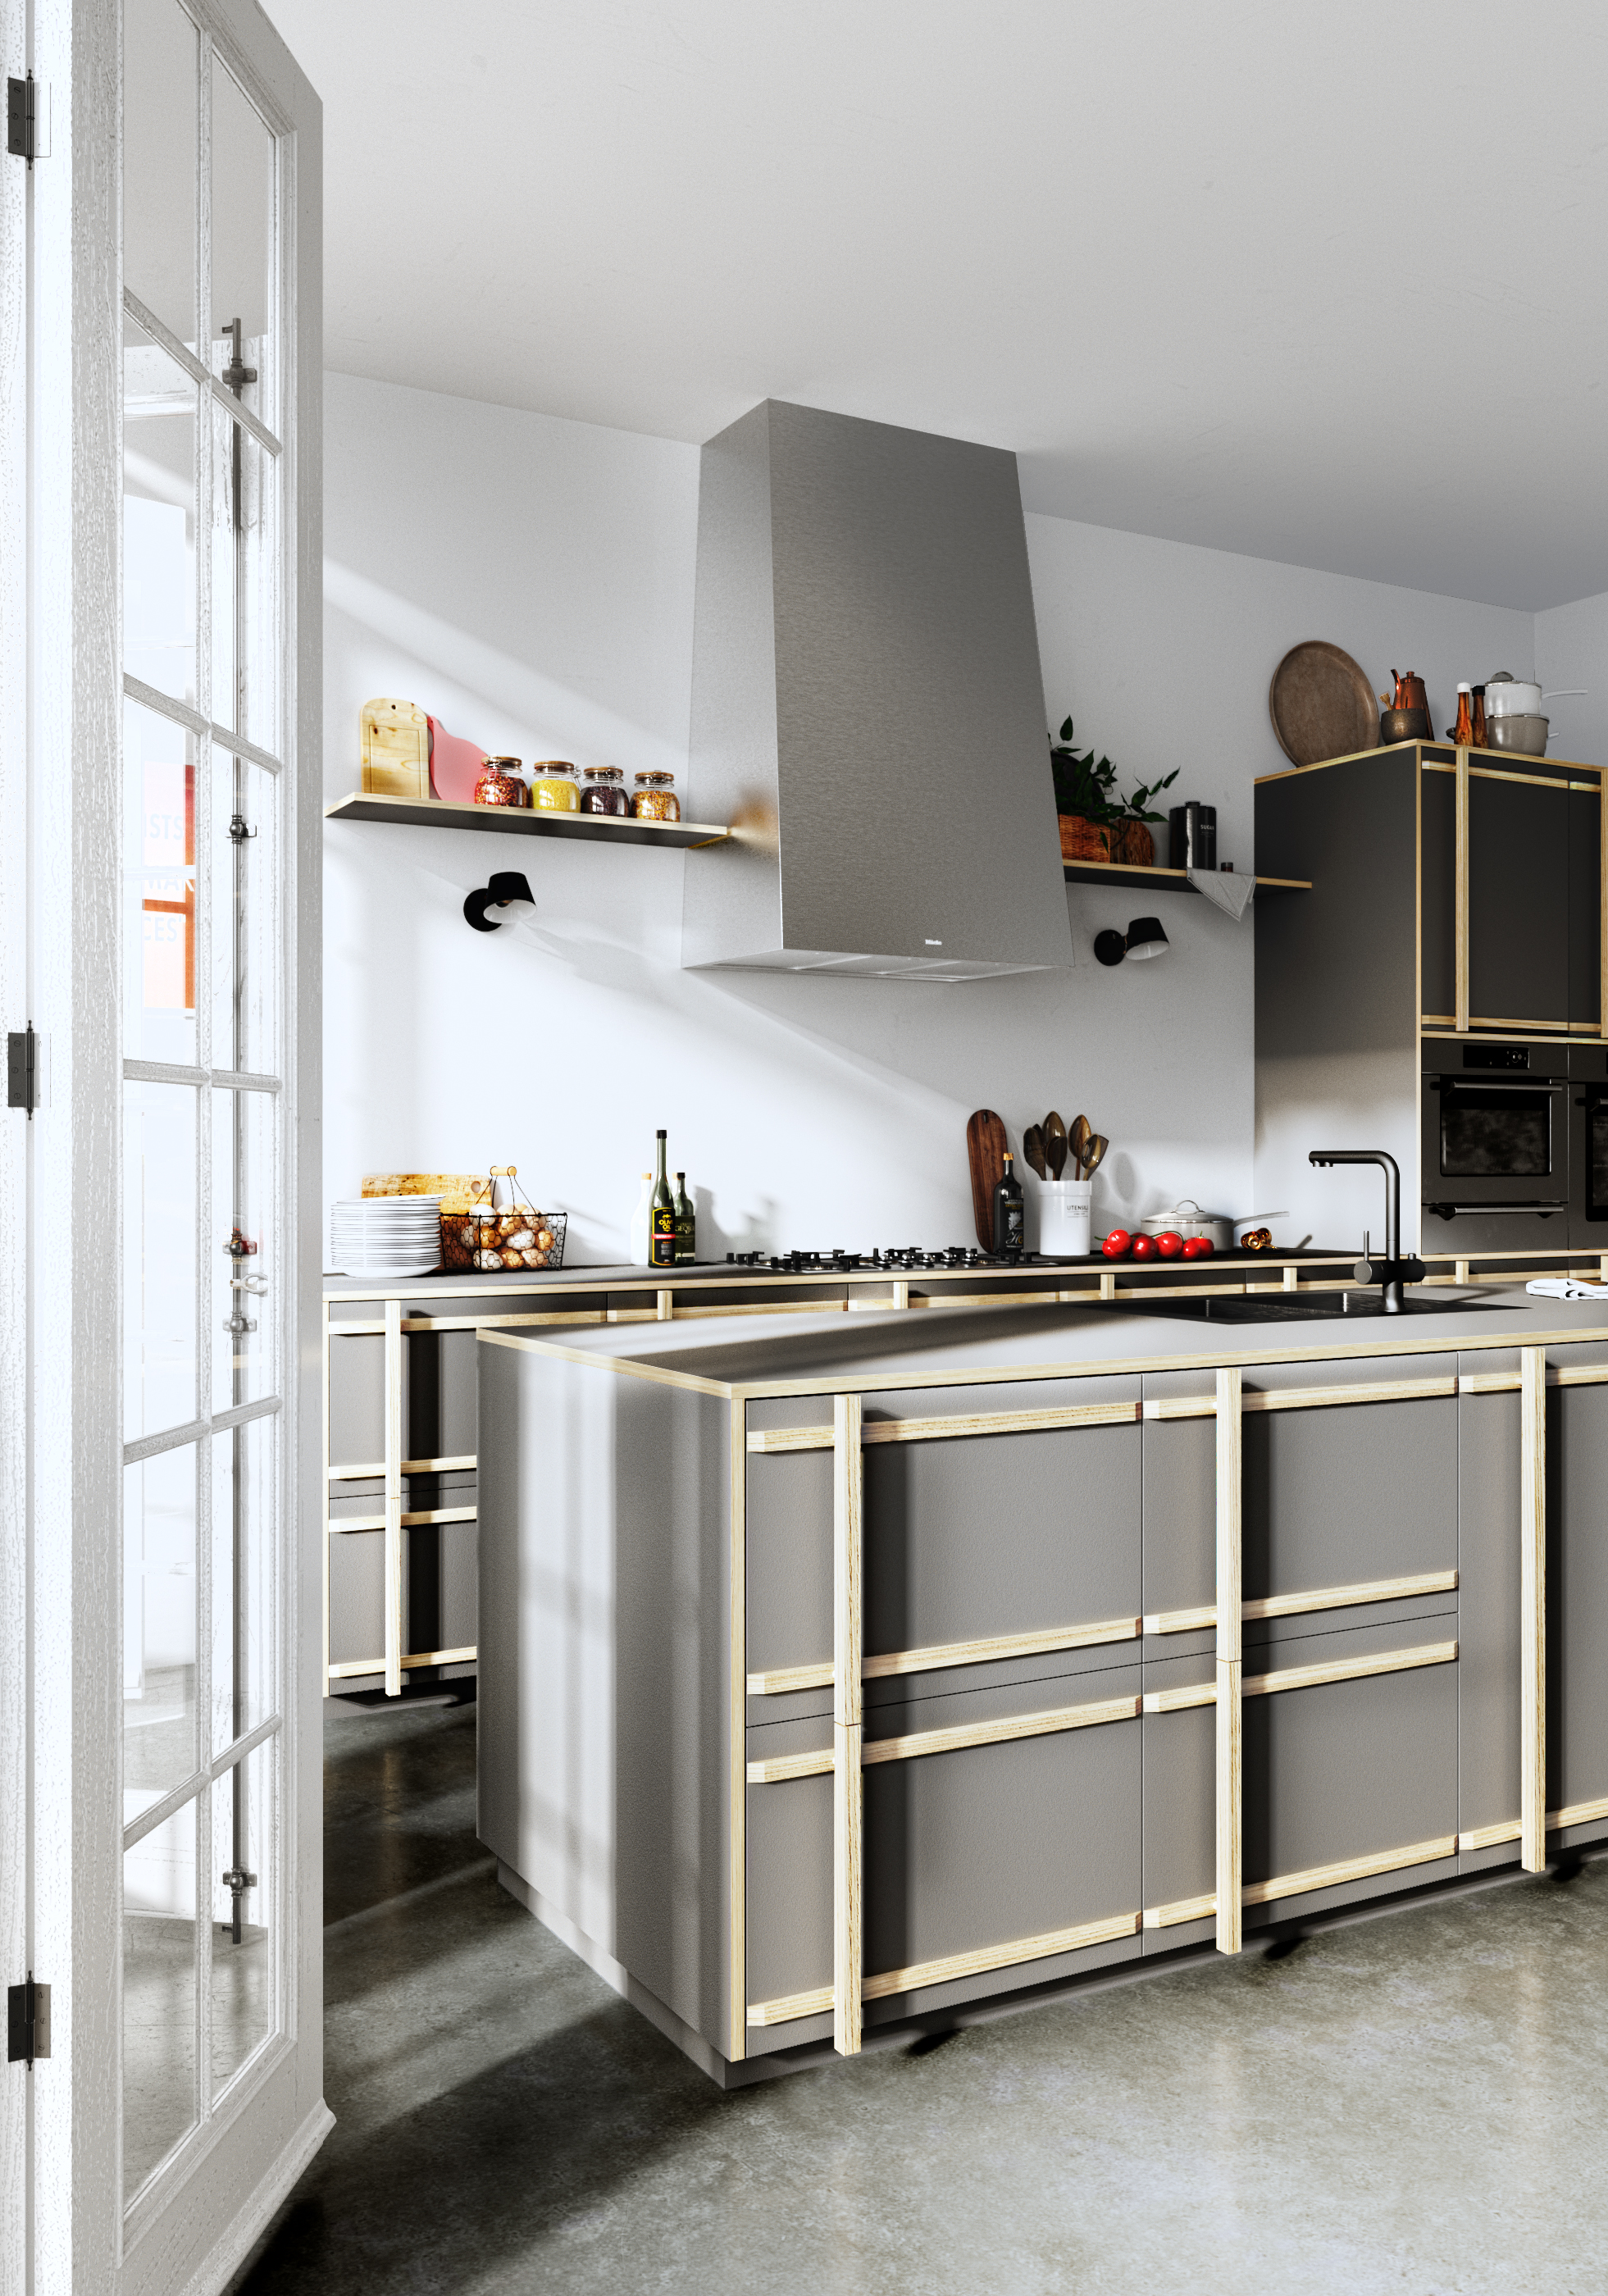 CGI Kitchen design & visualization